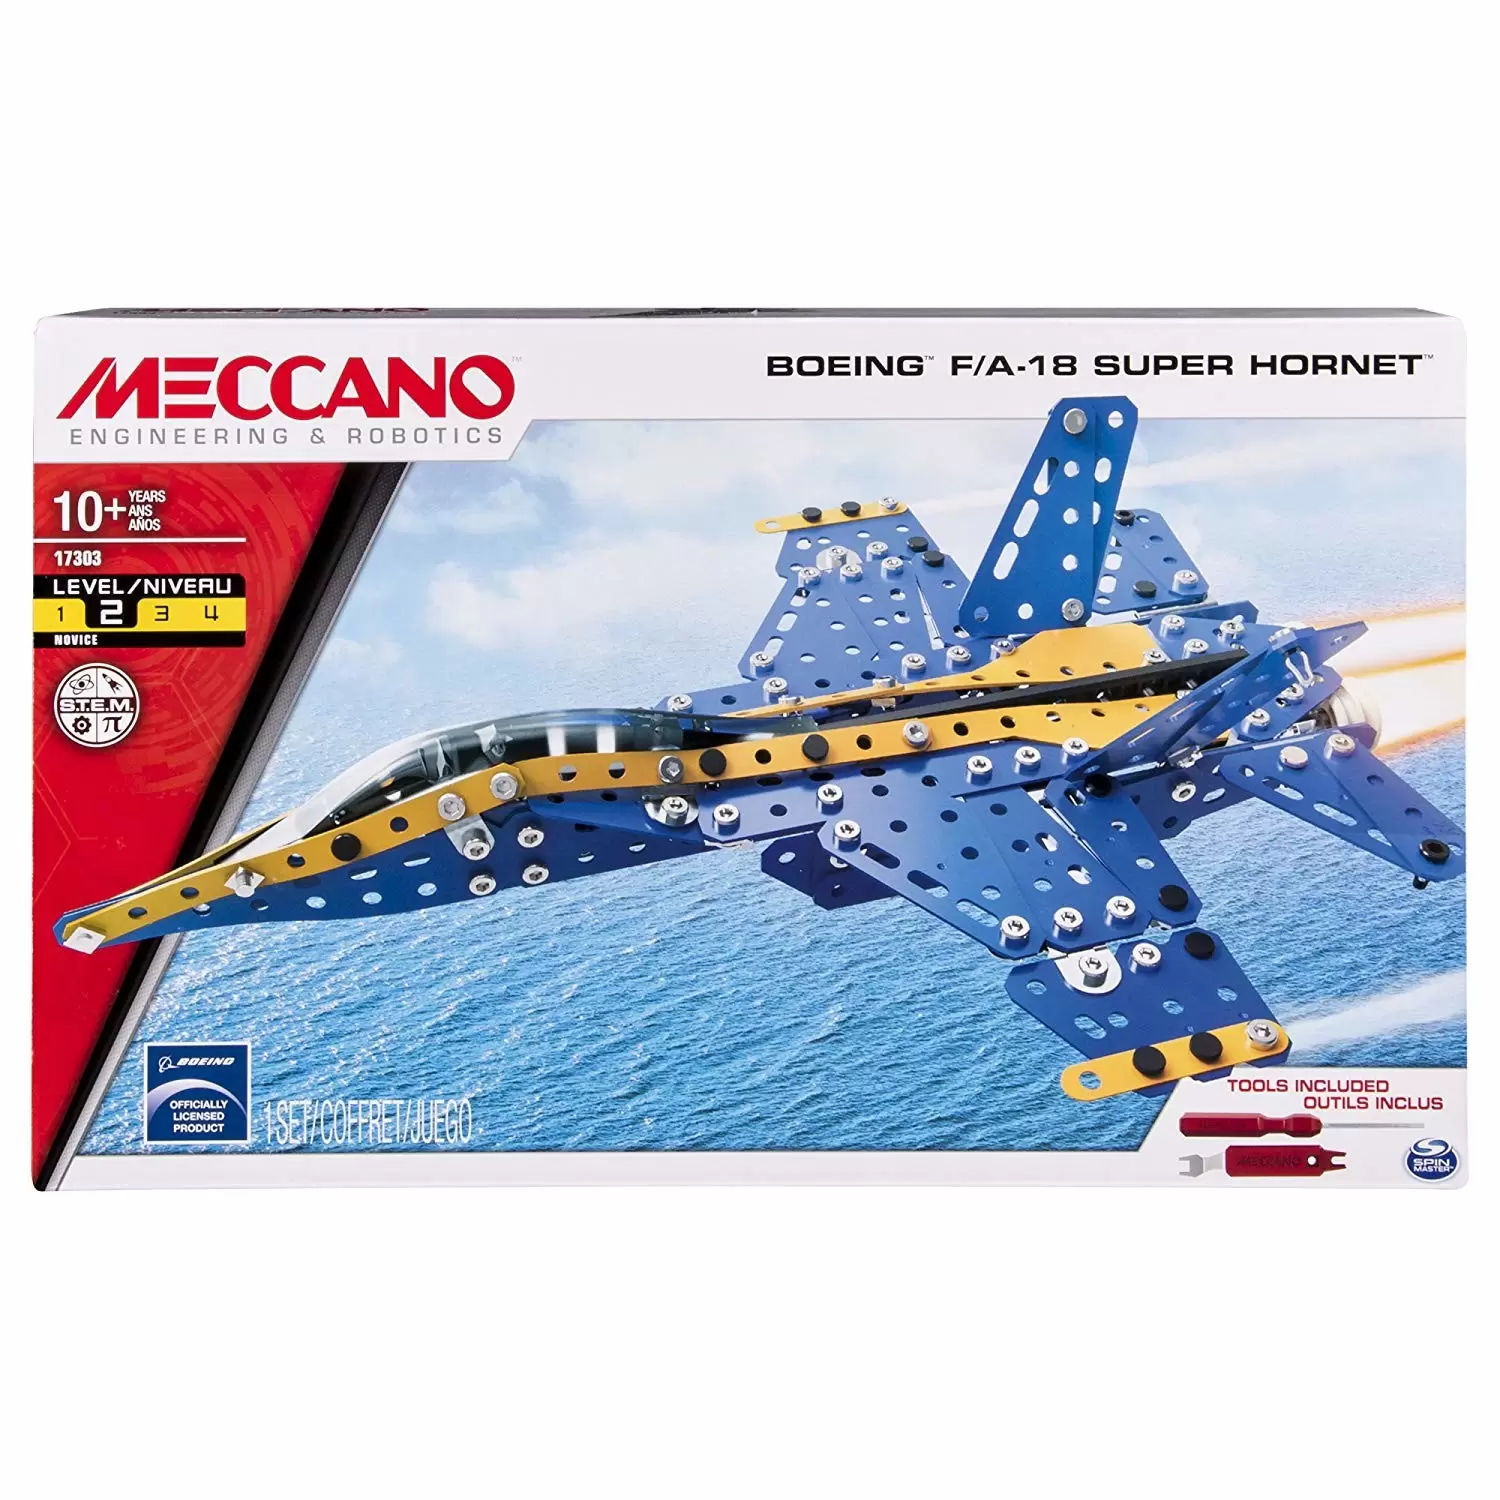 Meccano - Boeing F/A-18 Super Hornet